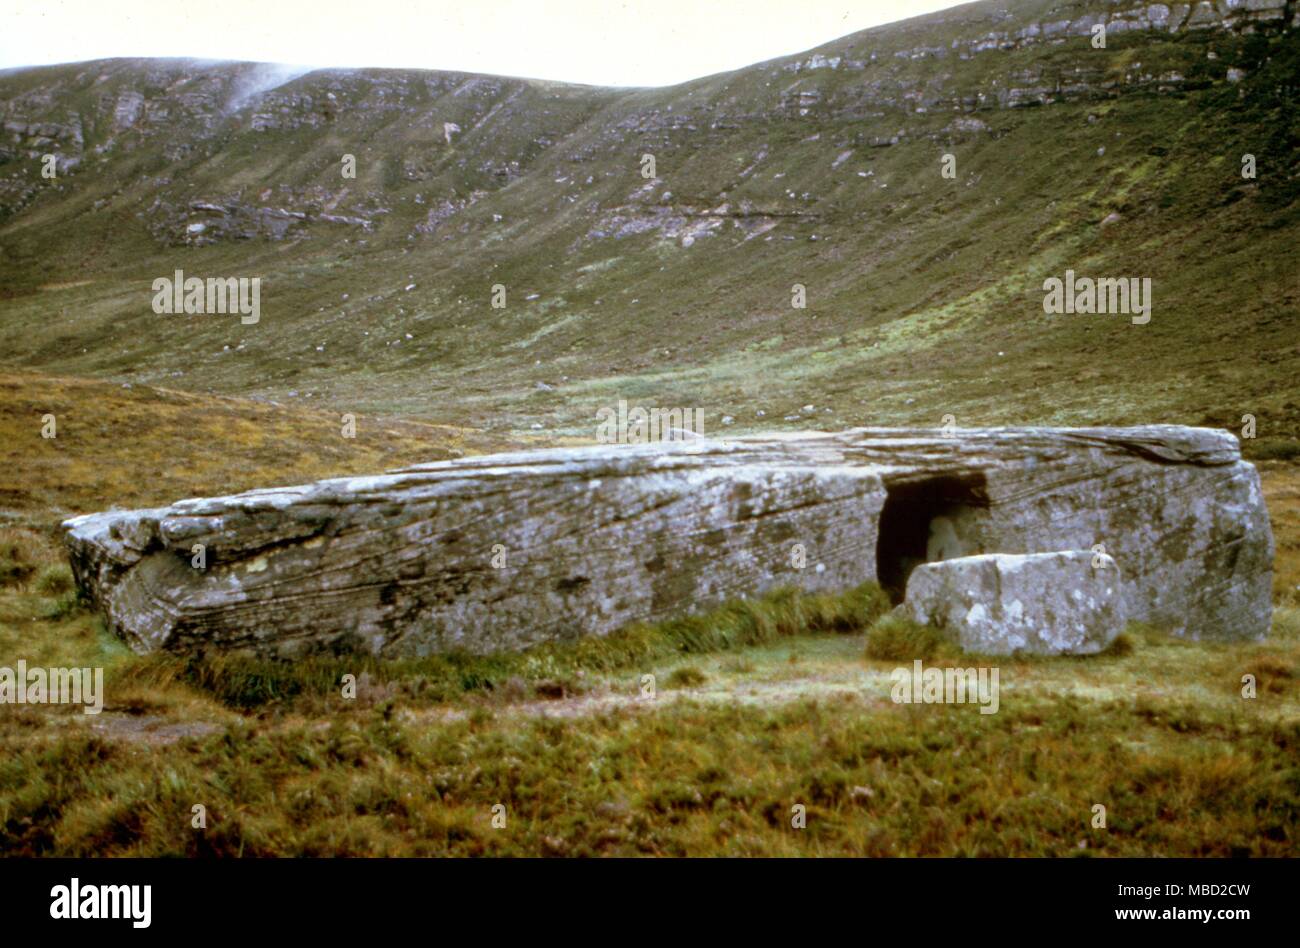 Antica la guarigione. La pietra Dwarfie sull'isola vulcanica di Hoy, off Orkney continentale. È stata una incubazione di epoca preistorica e cella di iniziazione. Foto Stock